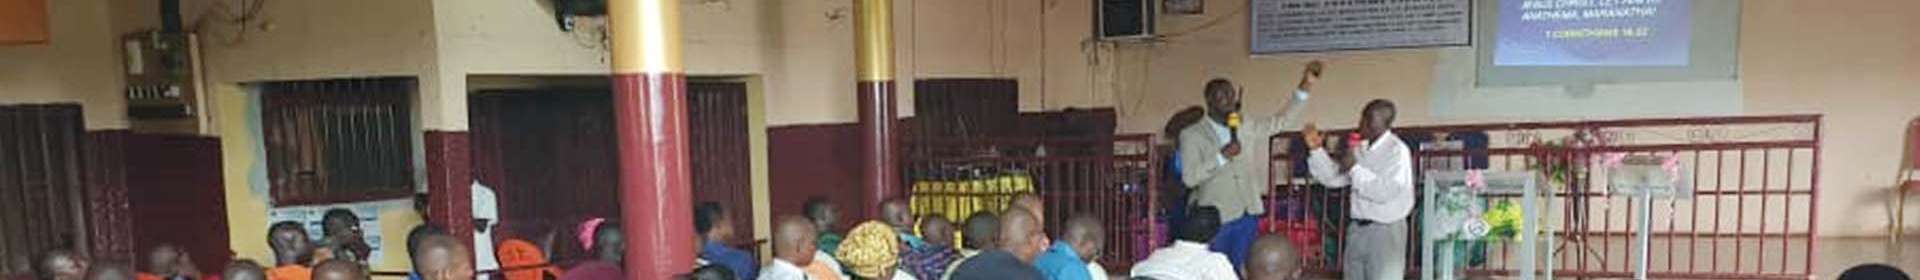 Seminário da Igreja Cristã Maranata em República de Guiné, país africano